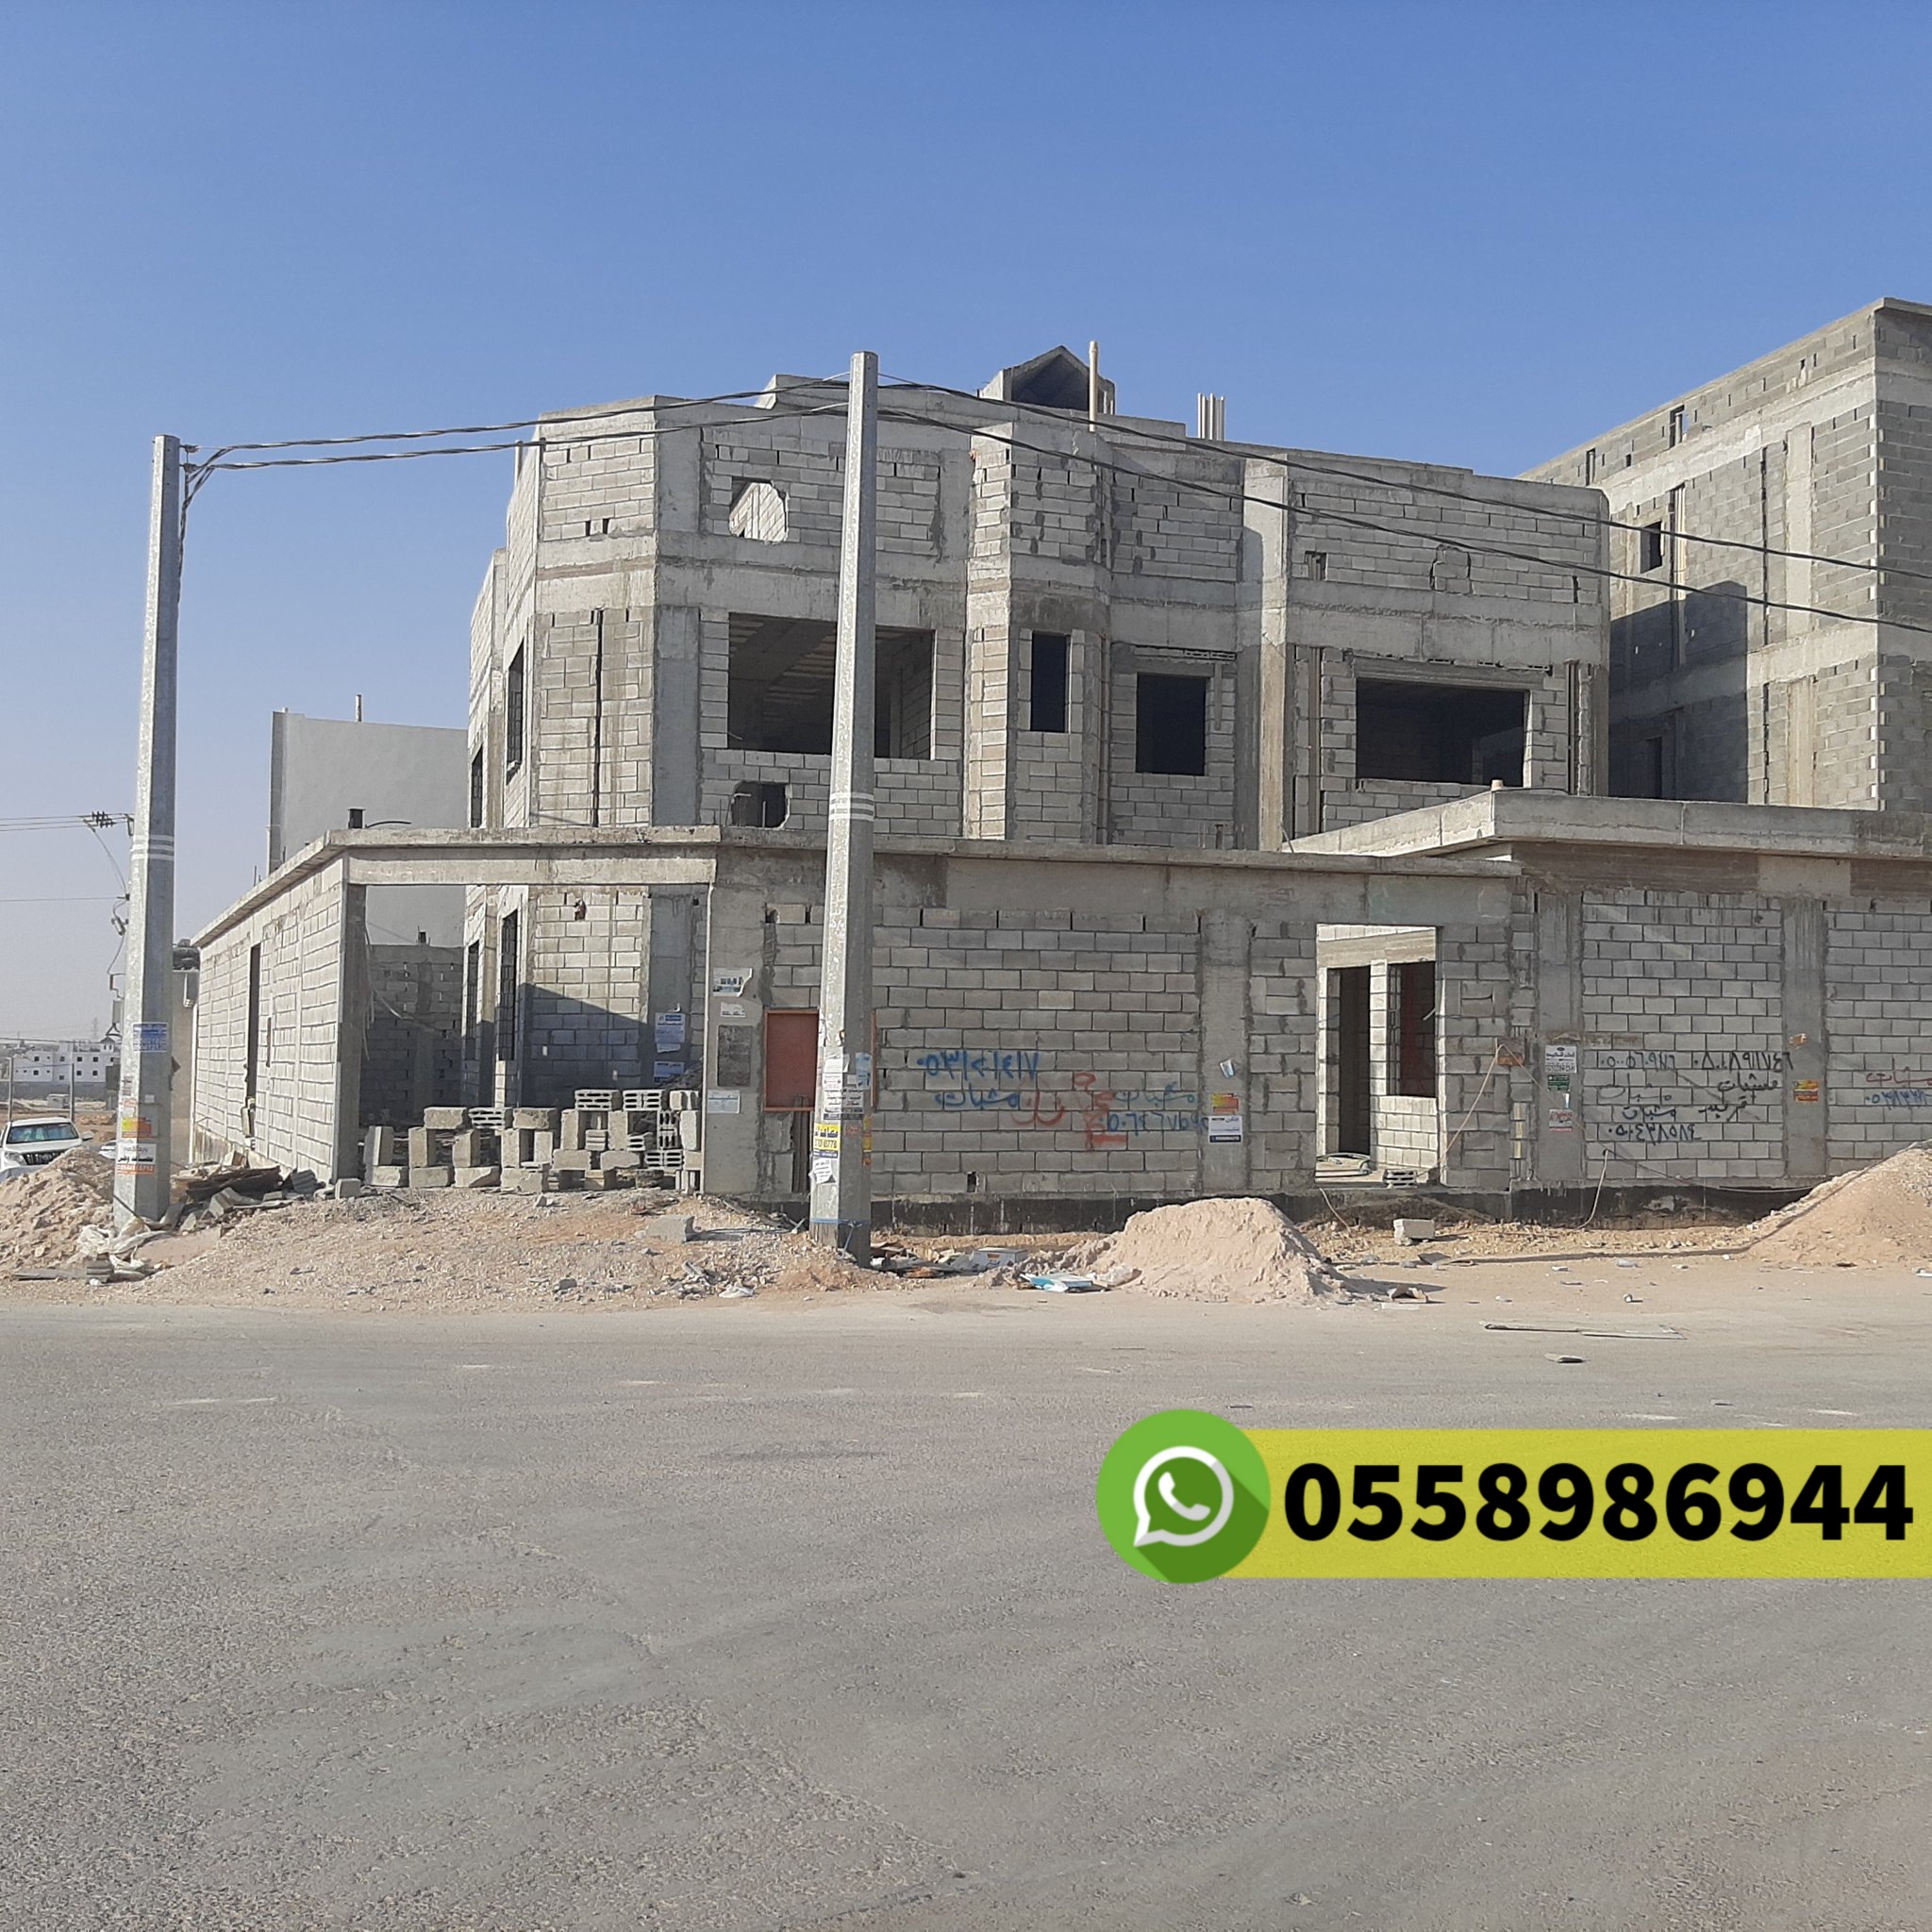 مقاول معماري في حي ابحر الجنوبية جدة جوال 0558986944